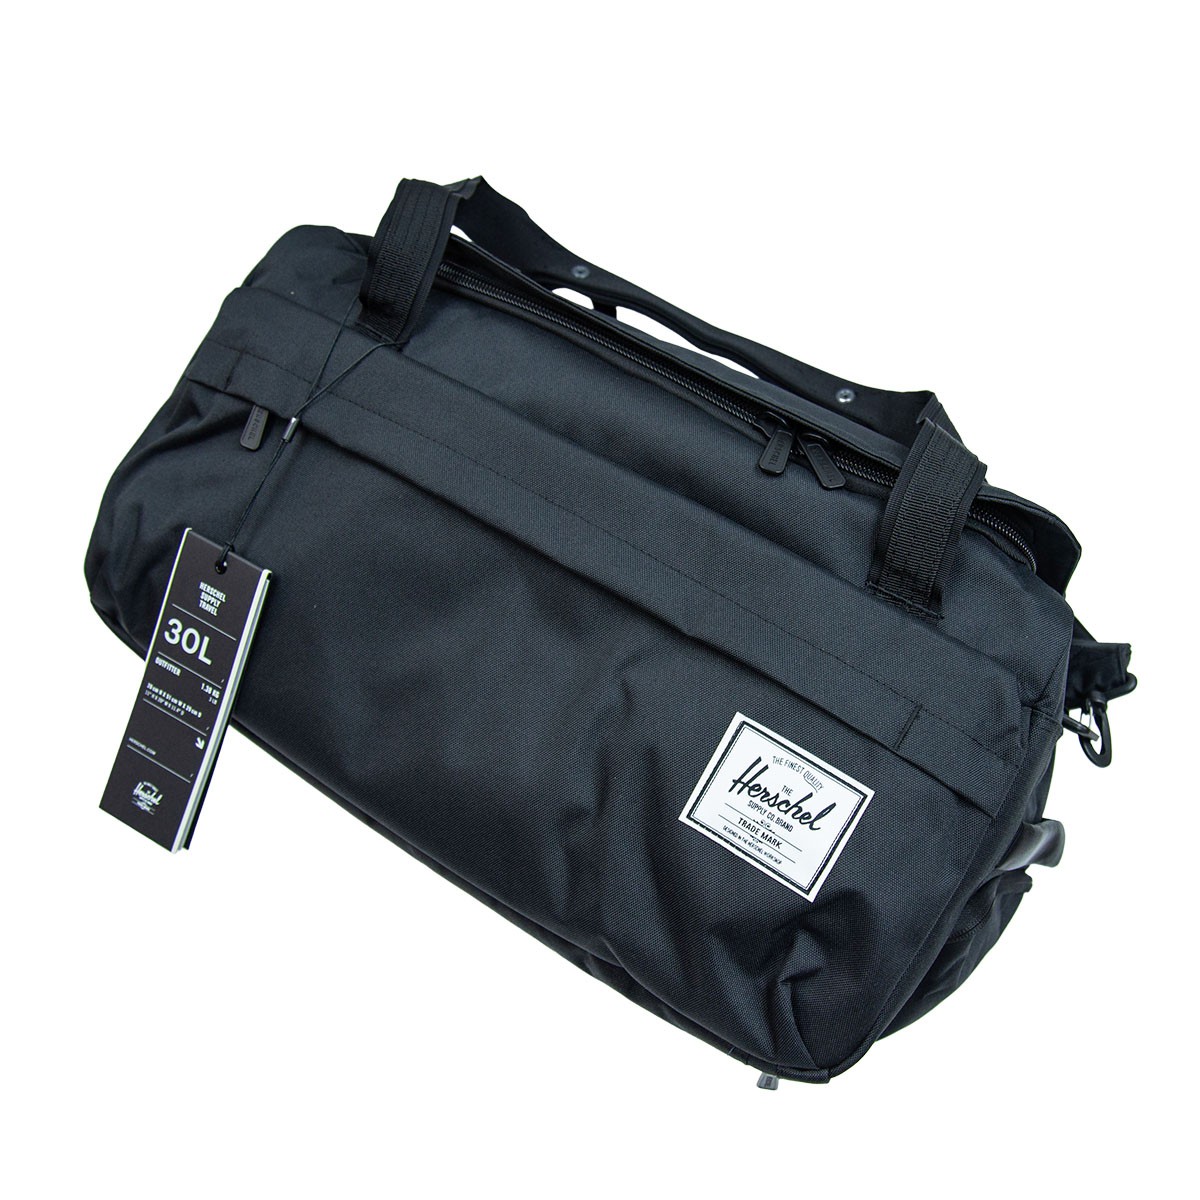 Herschel Outfitter Luggage 30L 三用旅行袋 手提 / 單肩斜揹 / 雙肩背囊 *荃灣店現貨*